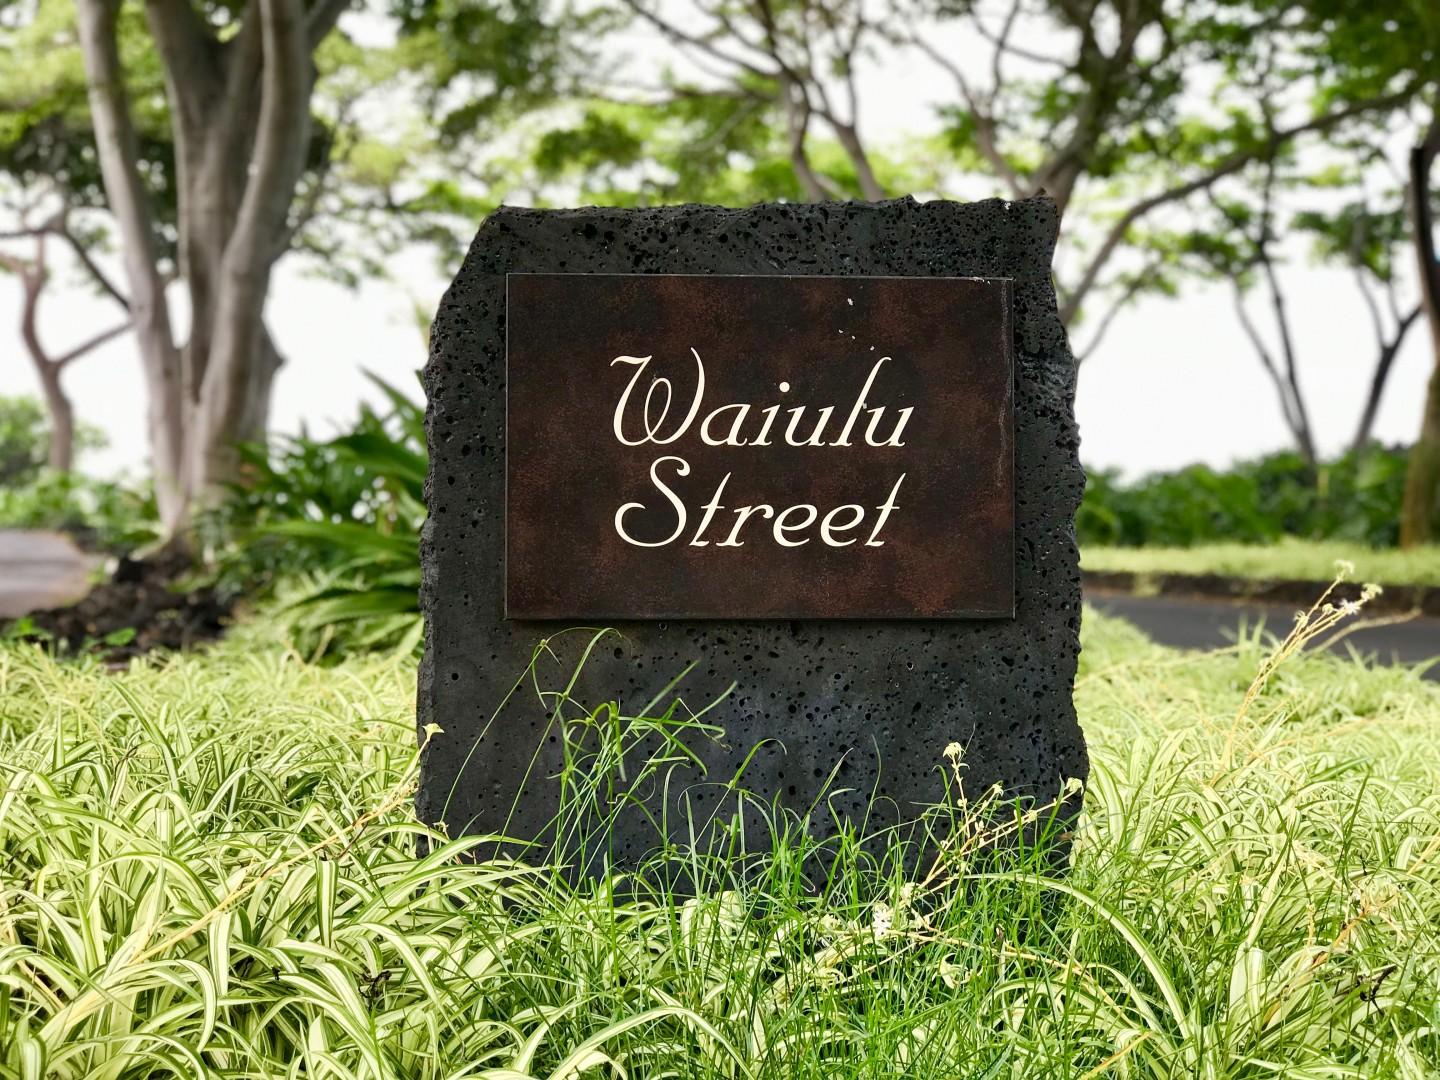 Kailua Kona Vacation Rentals, Fairways Villa 120A - Street Sign to Wai'ulu Street, Home to Fairway Villas.